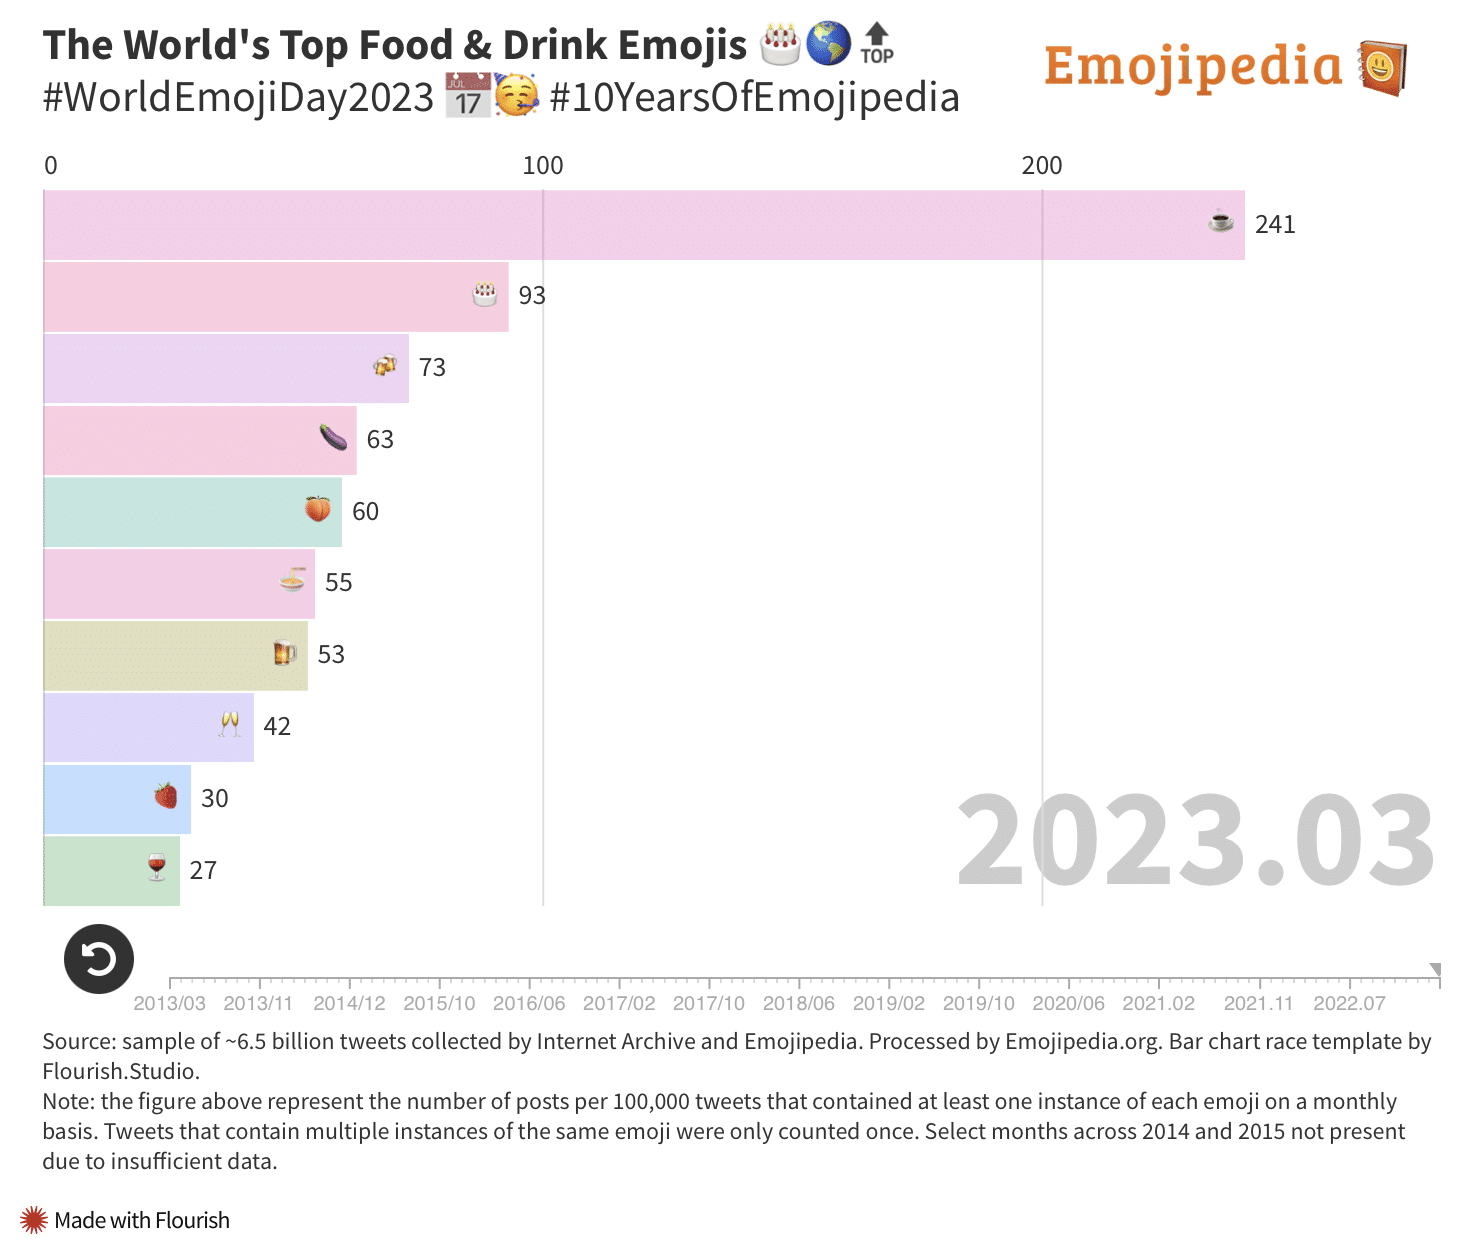 Pesquisa do Emojipedia sobre o uso de emojis no Twitter